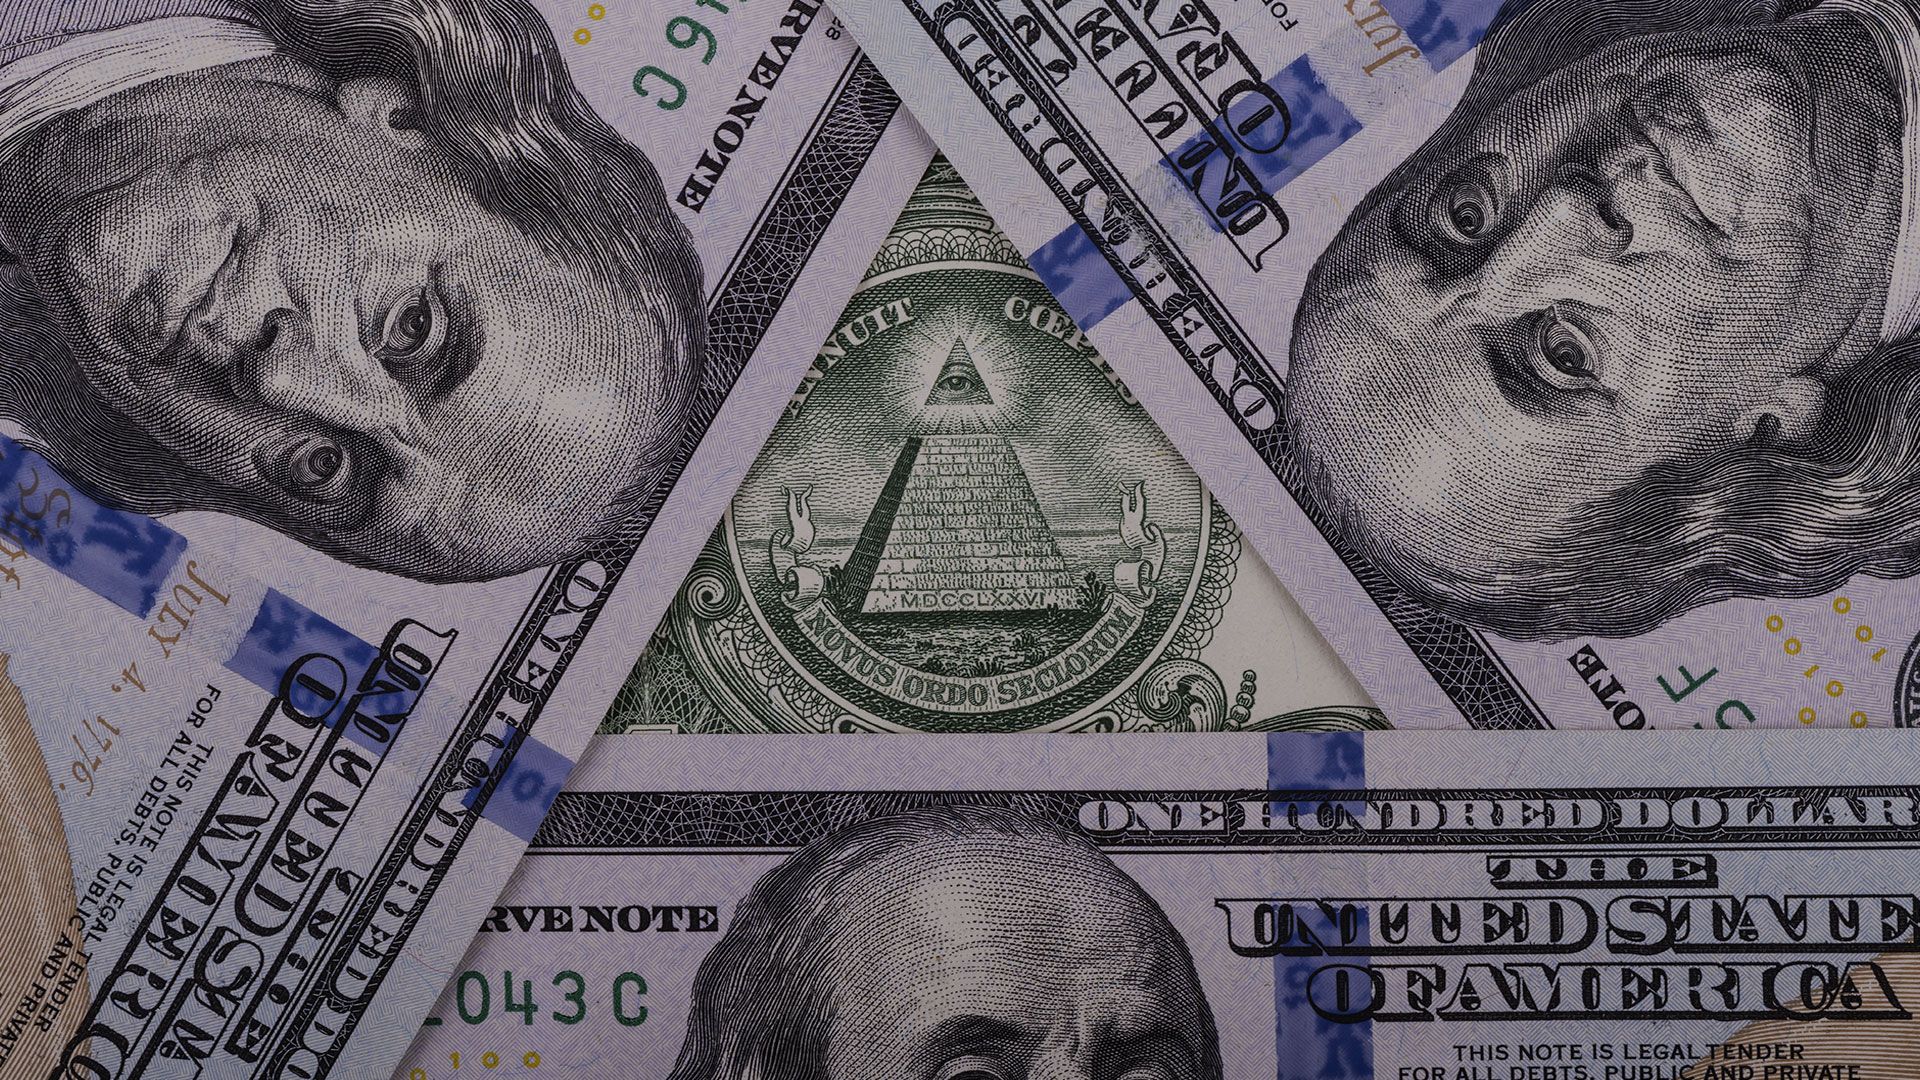 Promotional image for Как относиться к финансовым пирамидам?